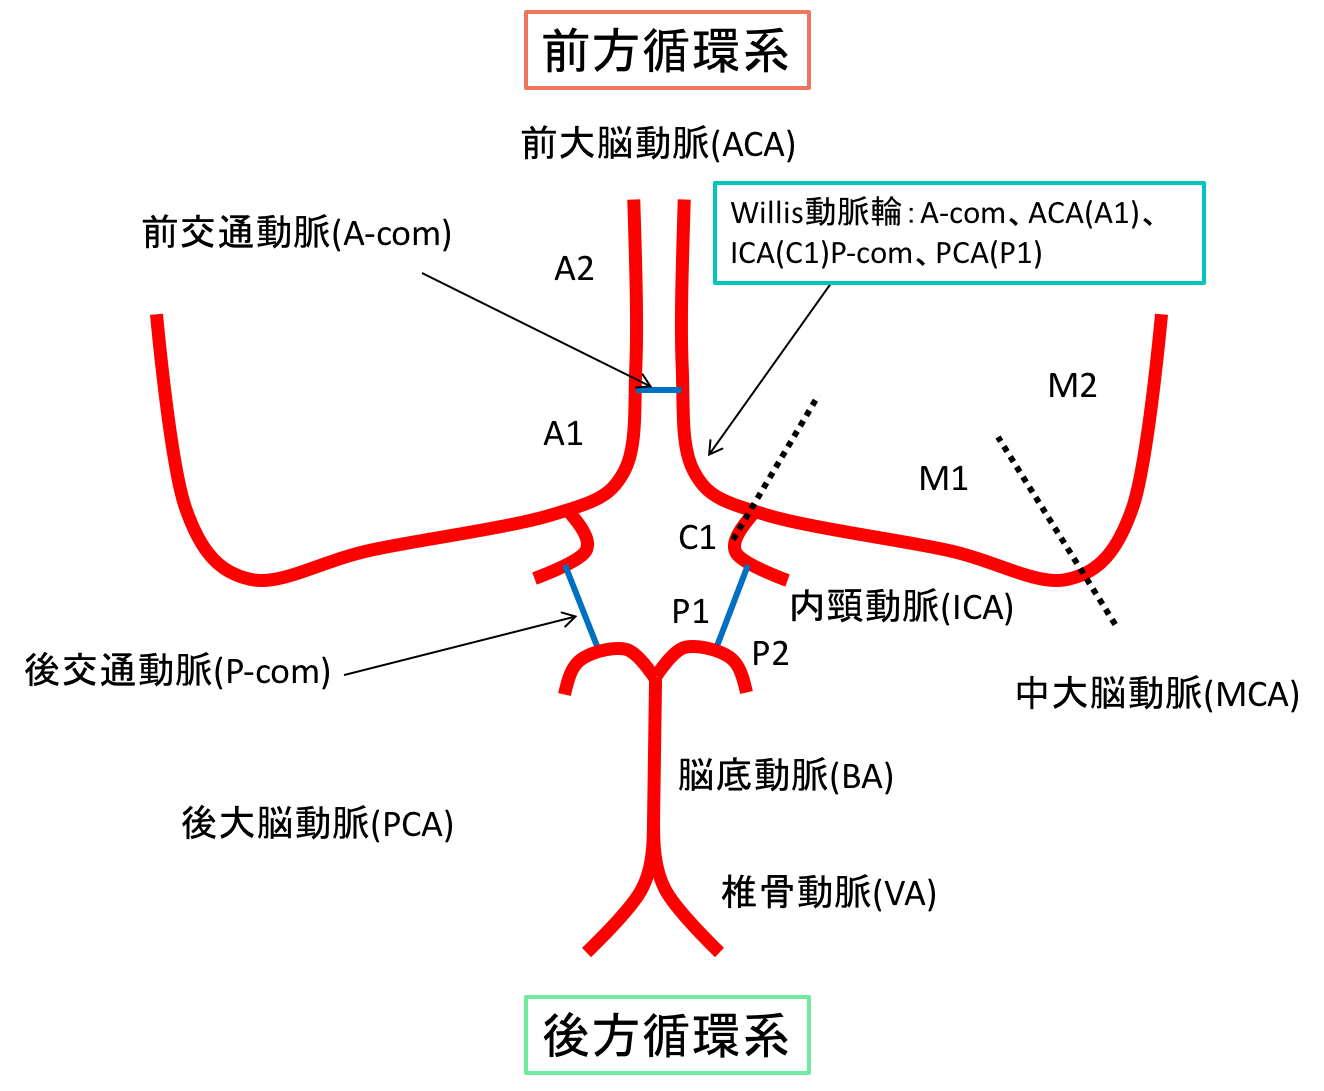 脳の血管の前方循環系、後方循環系、willis動脈輪のイラスト